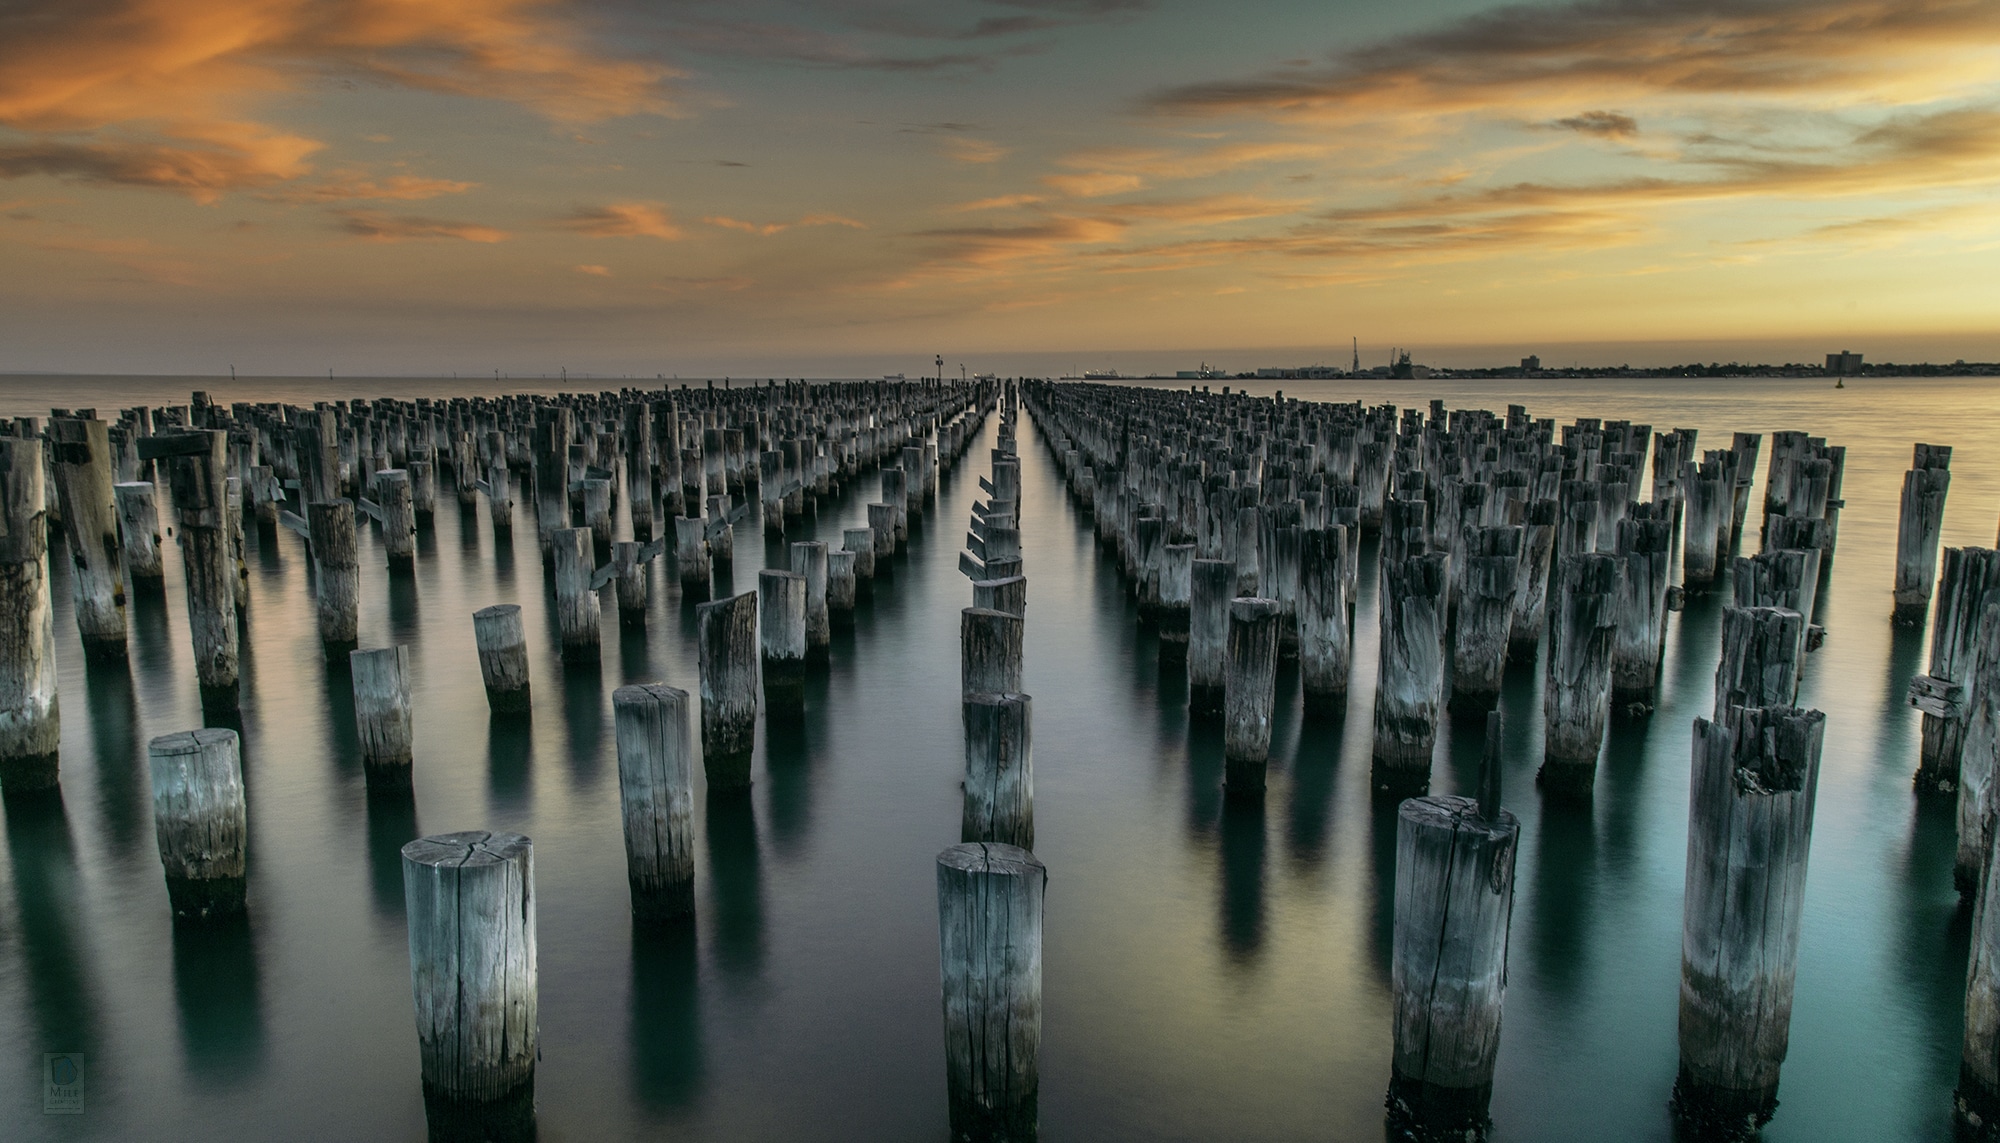 Princes Pier - Landscape Photography in Australia